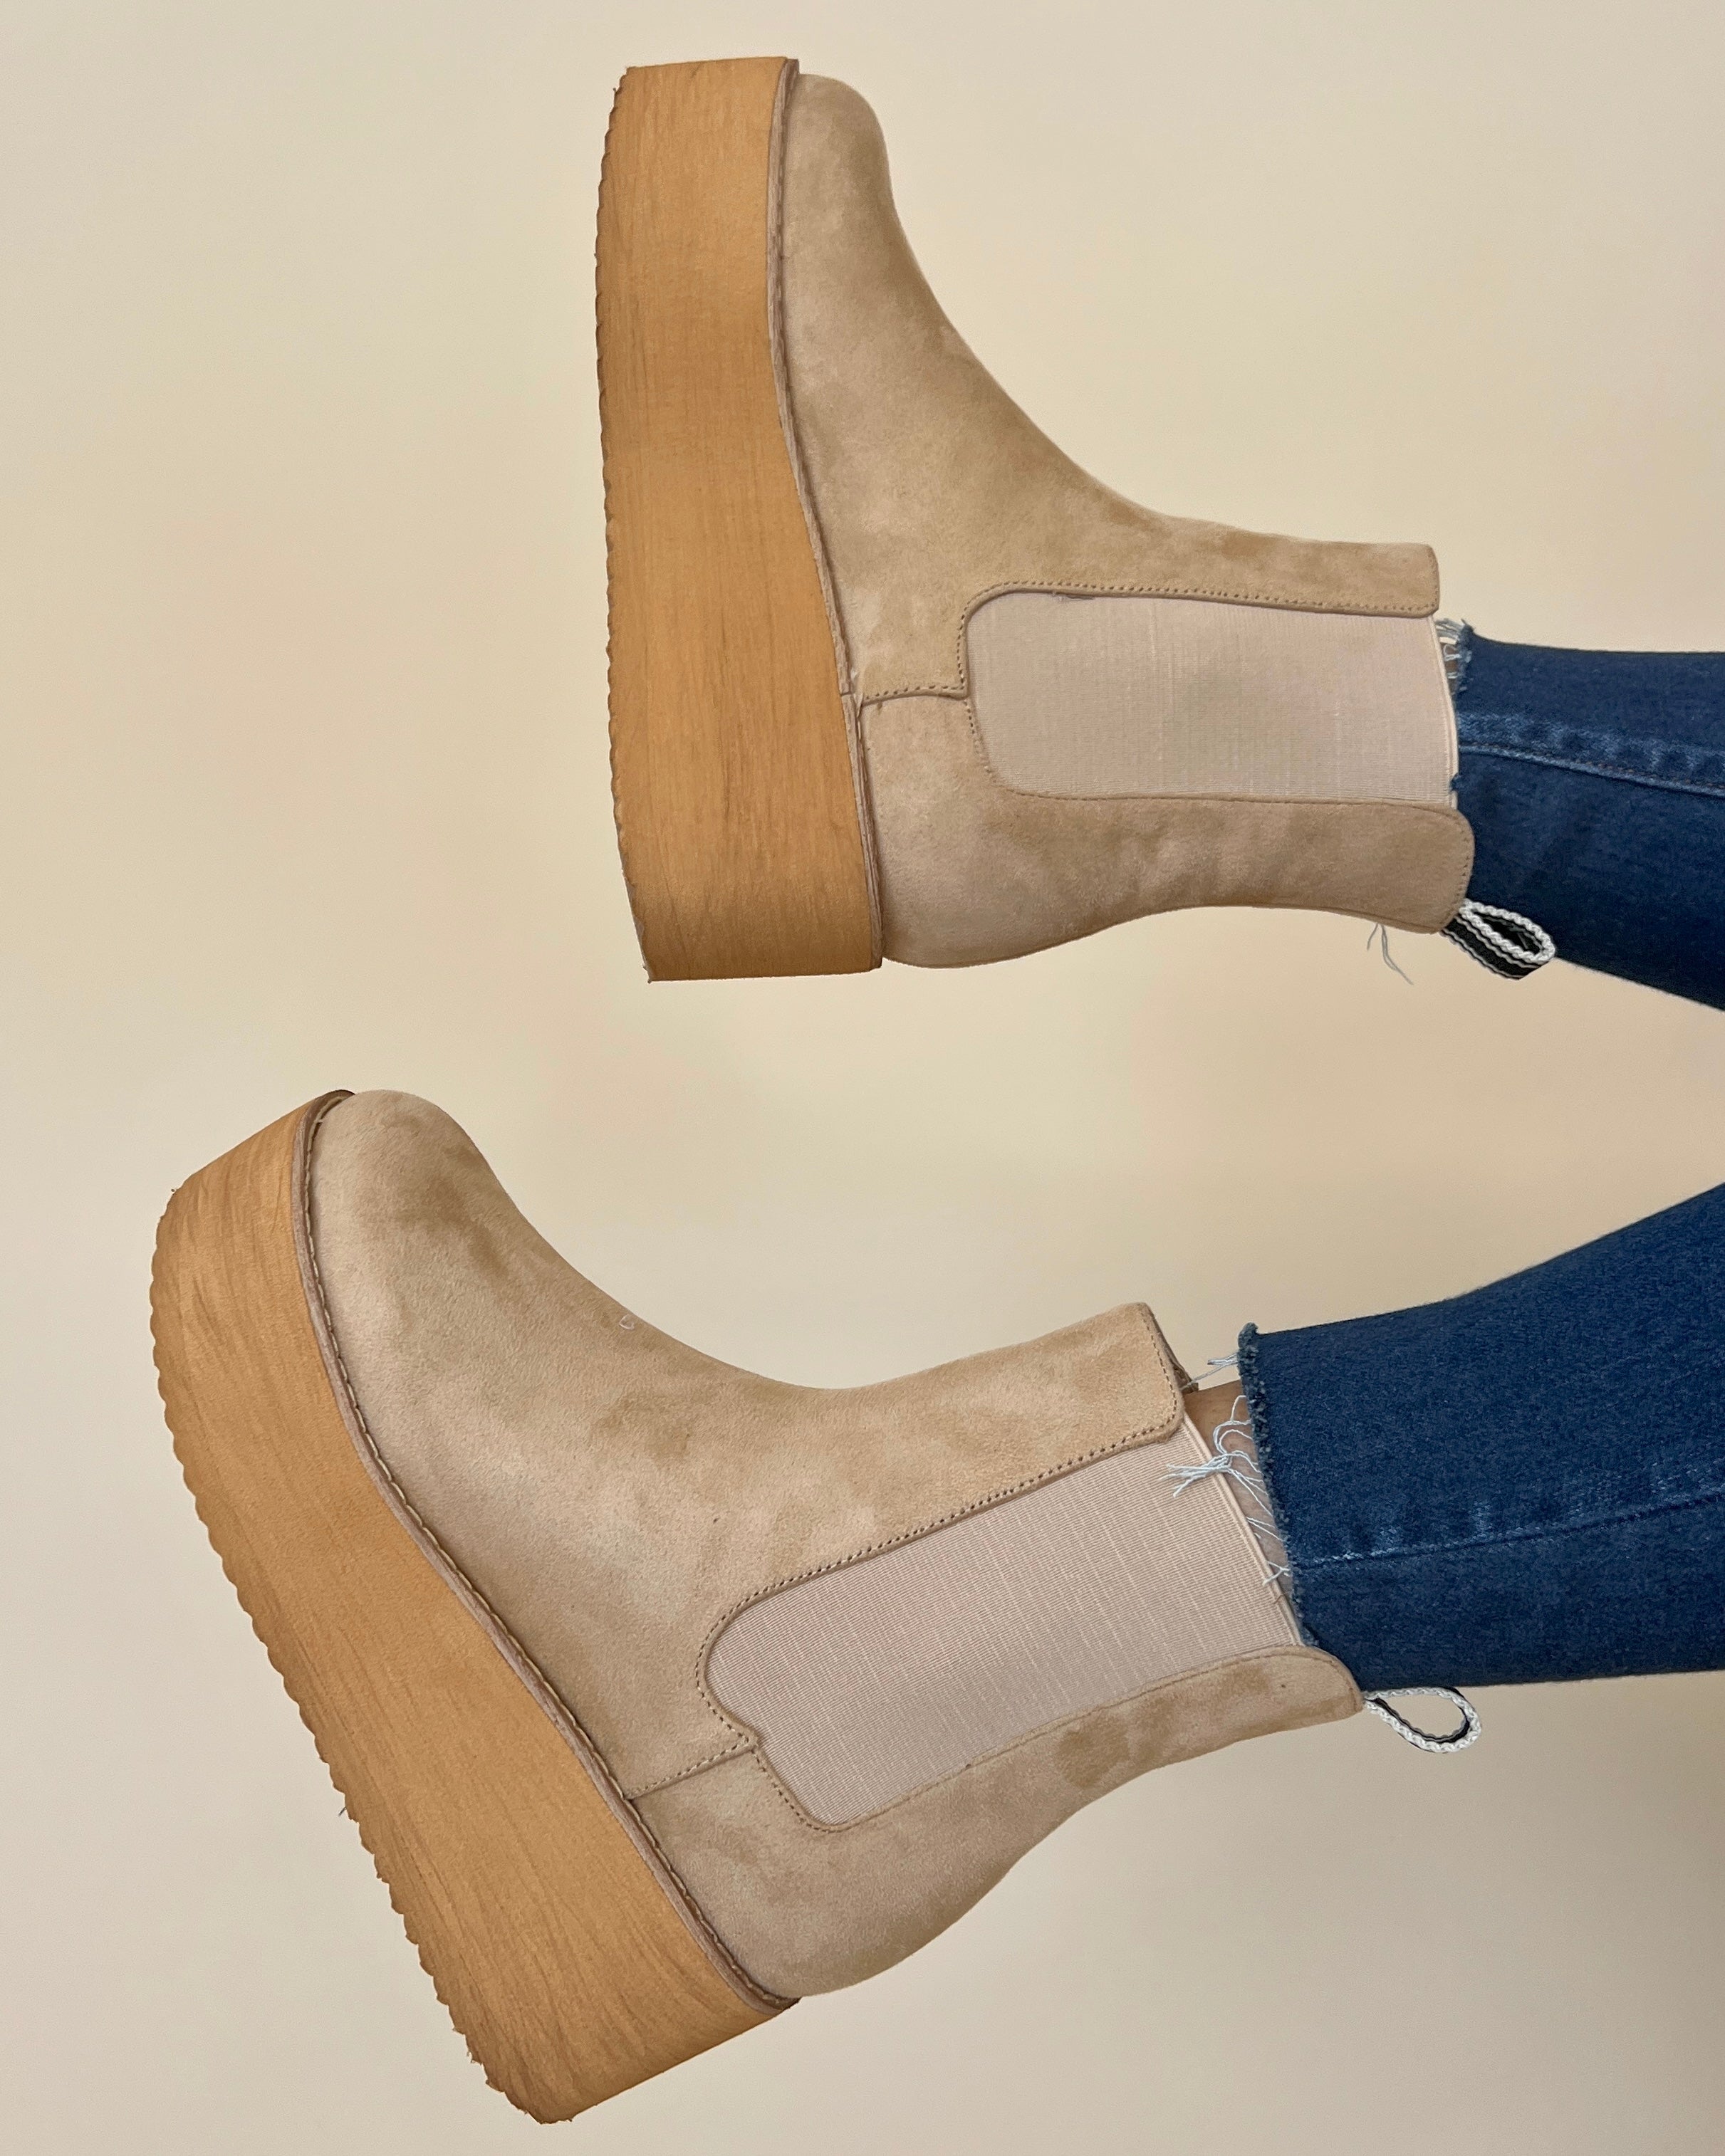 Evelyn Khaki Suede Platform Boots-Shop-Womens-Boutique-Clothing